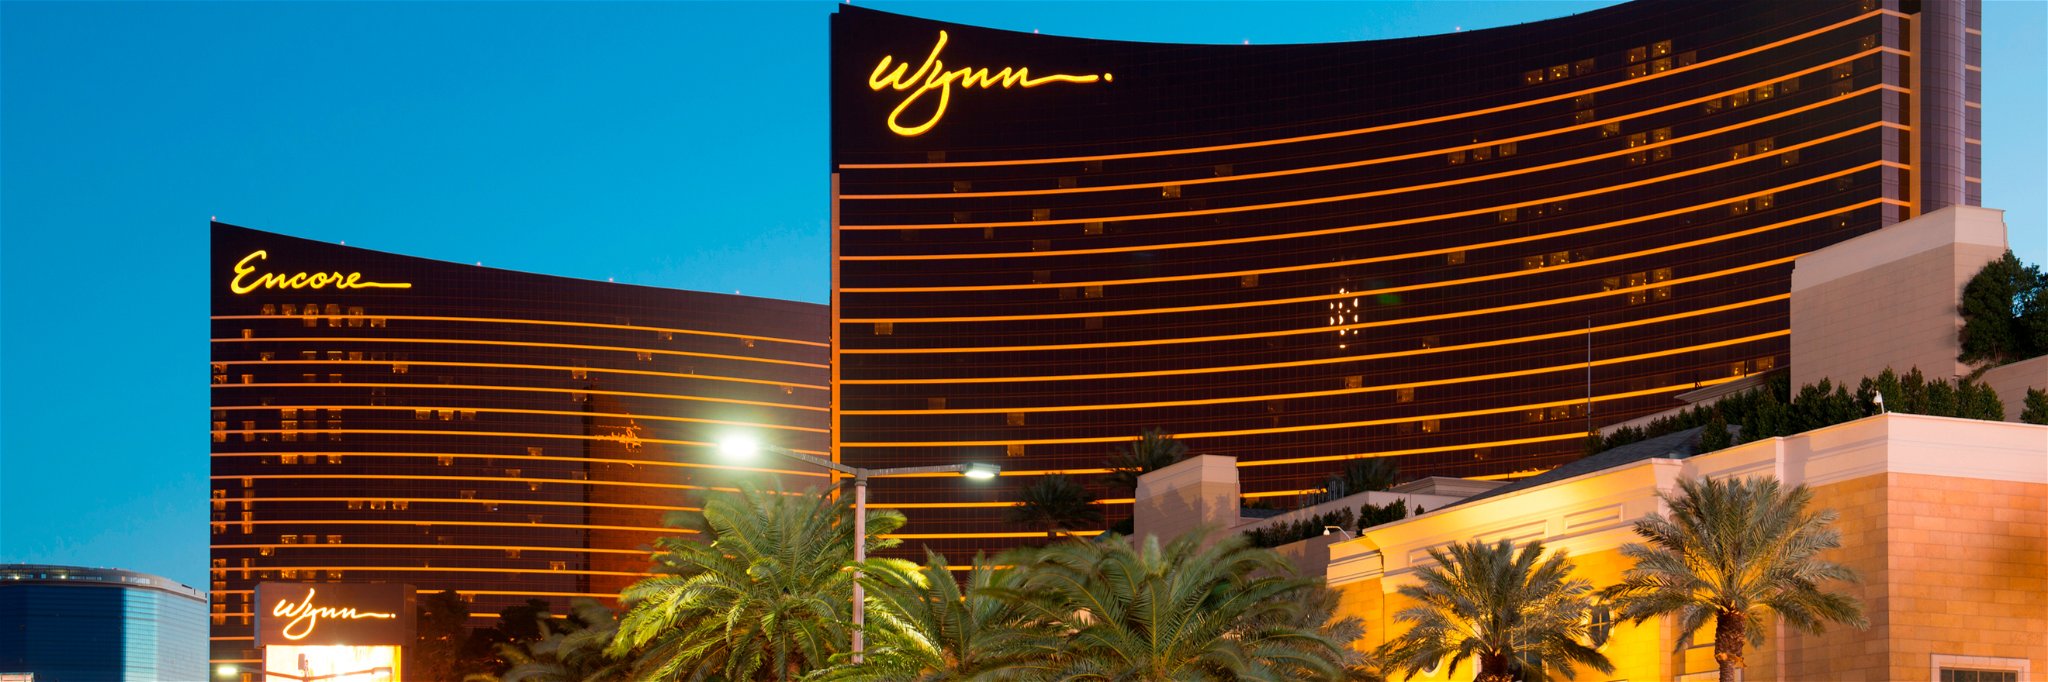 Wynn casino in Las Vegas